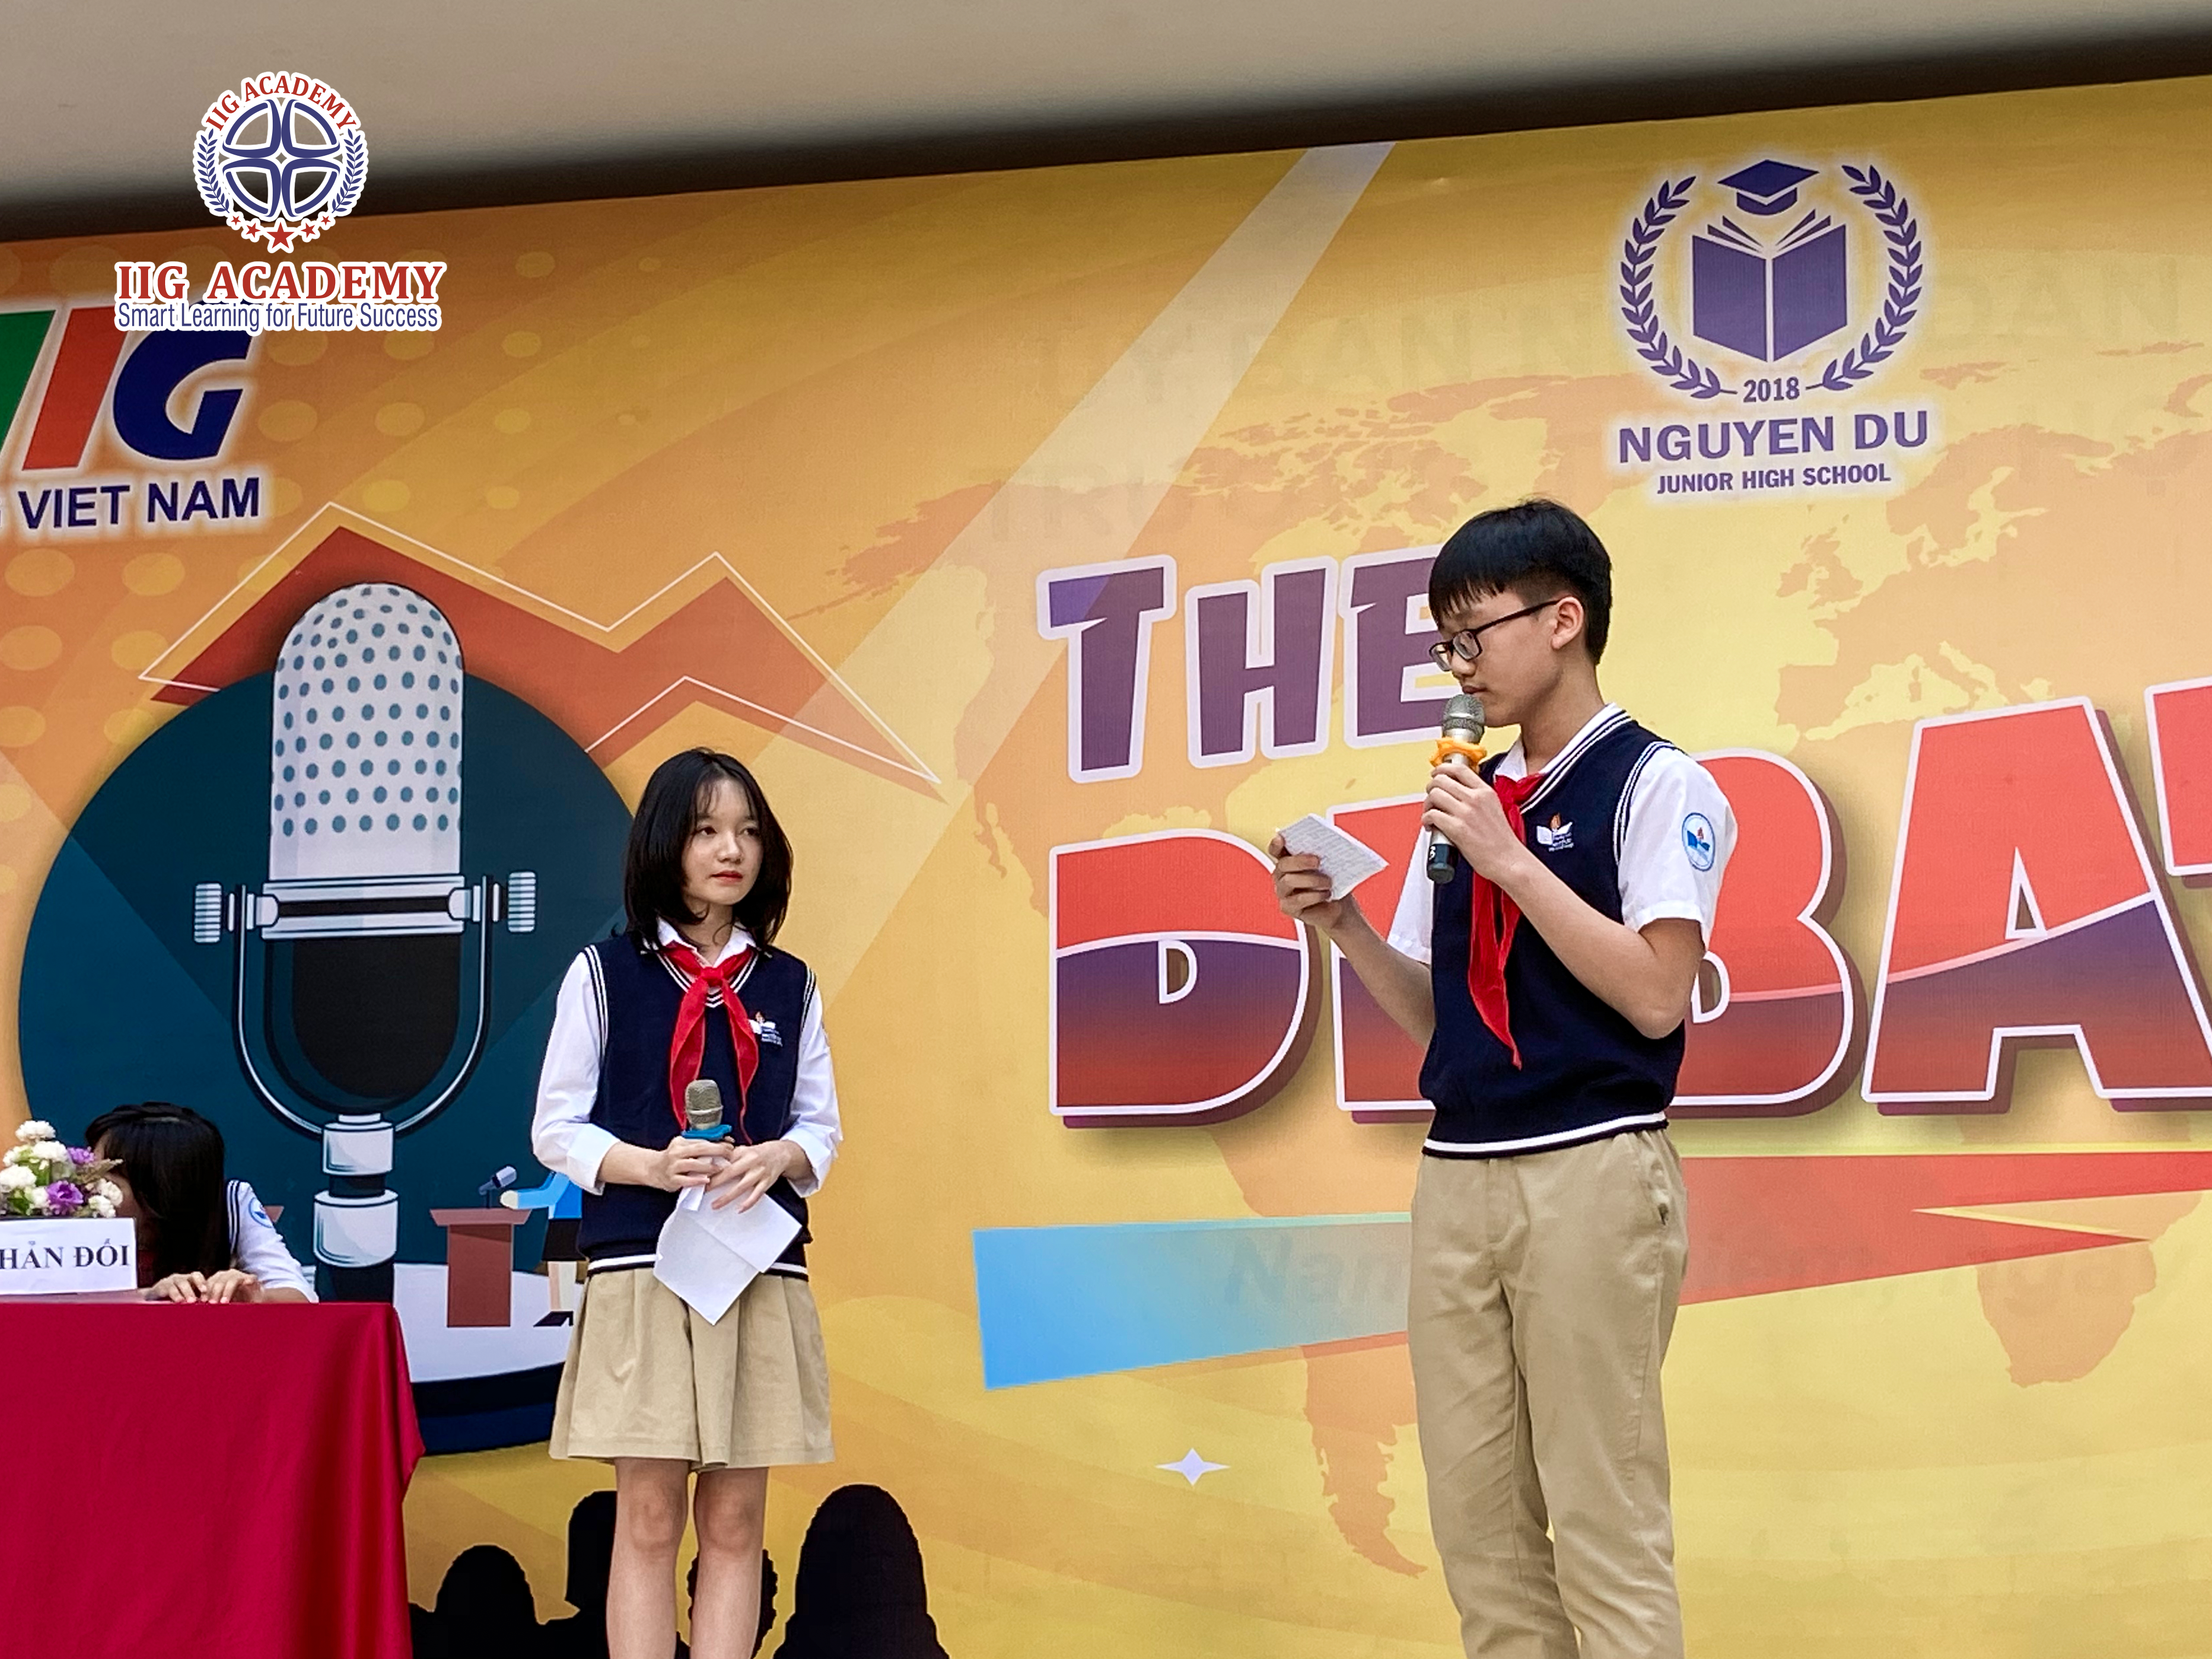 THCS Nguyễn Du – Tổ chức vòng Chung kết The Debate sôi động, gay cấn